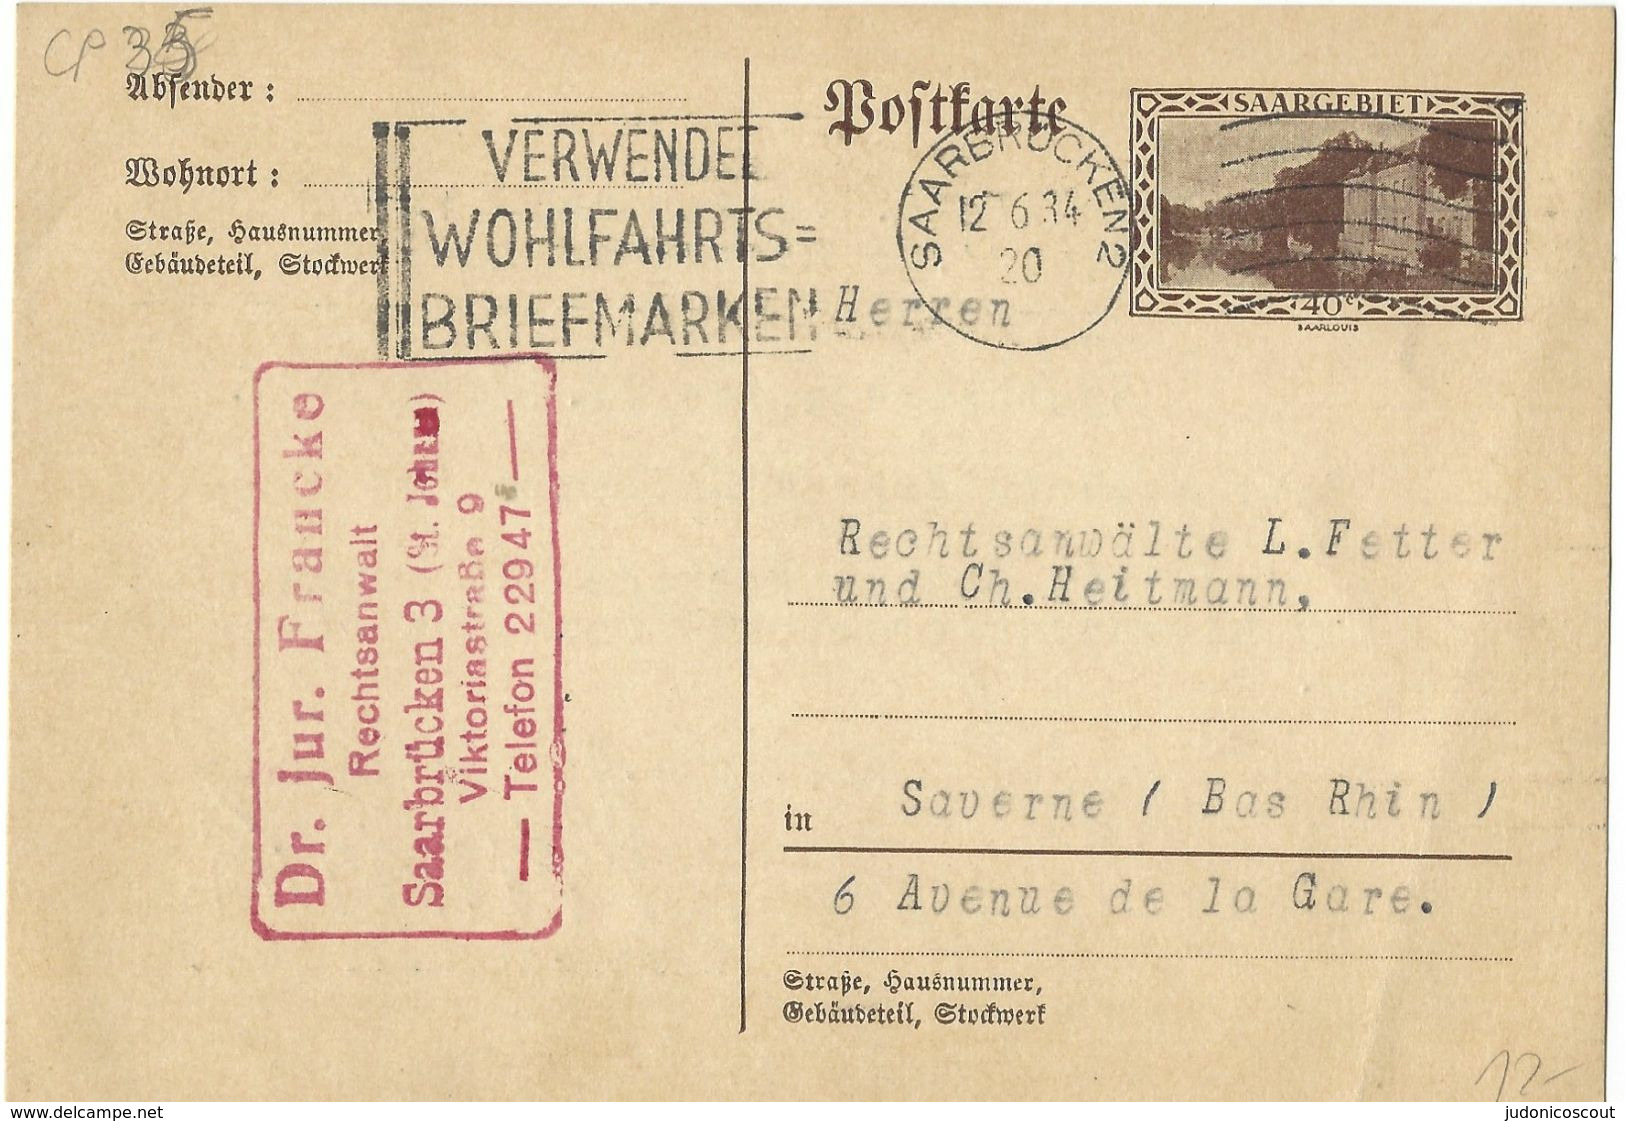 SAARGEBIET Ganzsache Entier - SAARBRÜCKEN 2 / VERWENDET WOHLFARTS- BRIEFMARKEN 12.6.1934 - Storia Postale